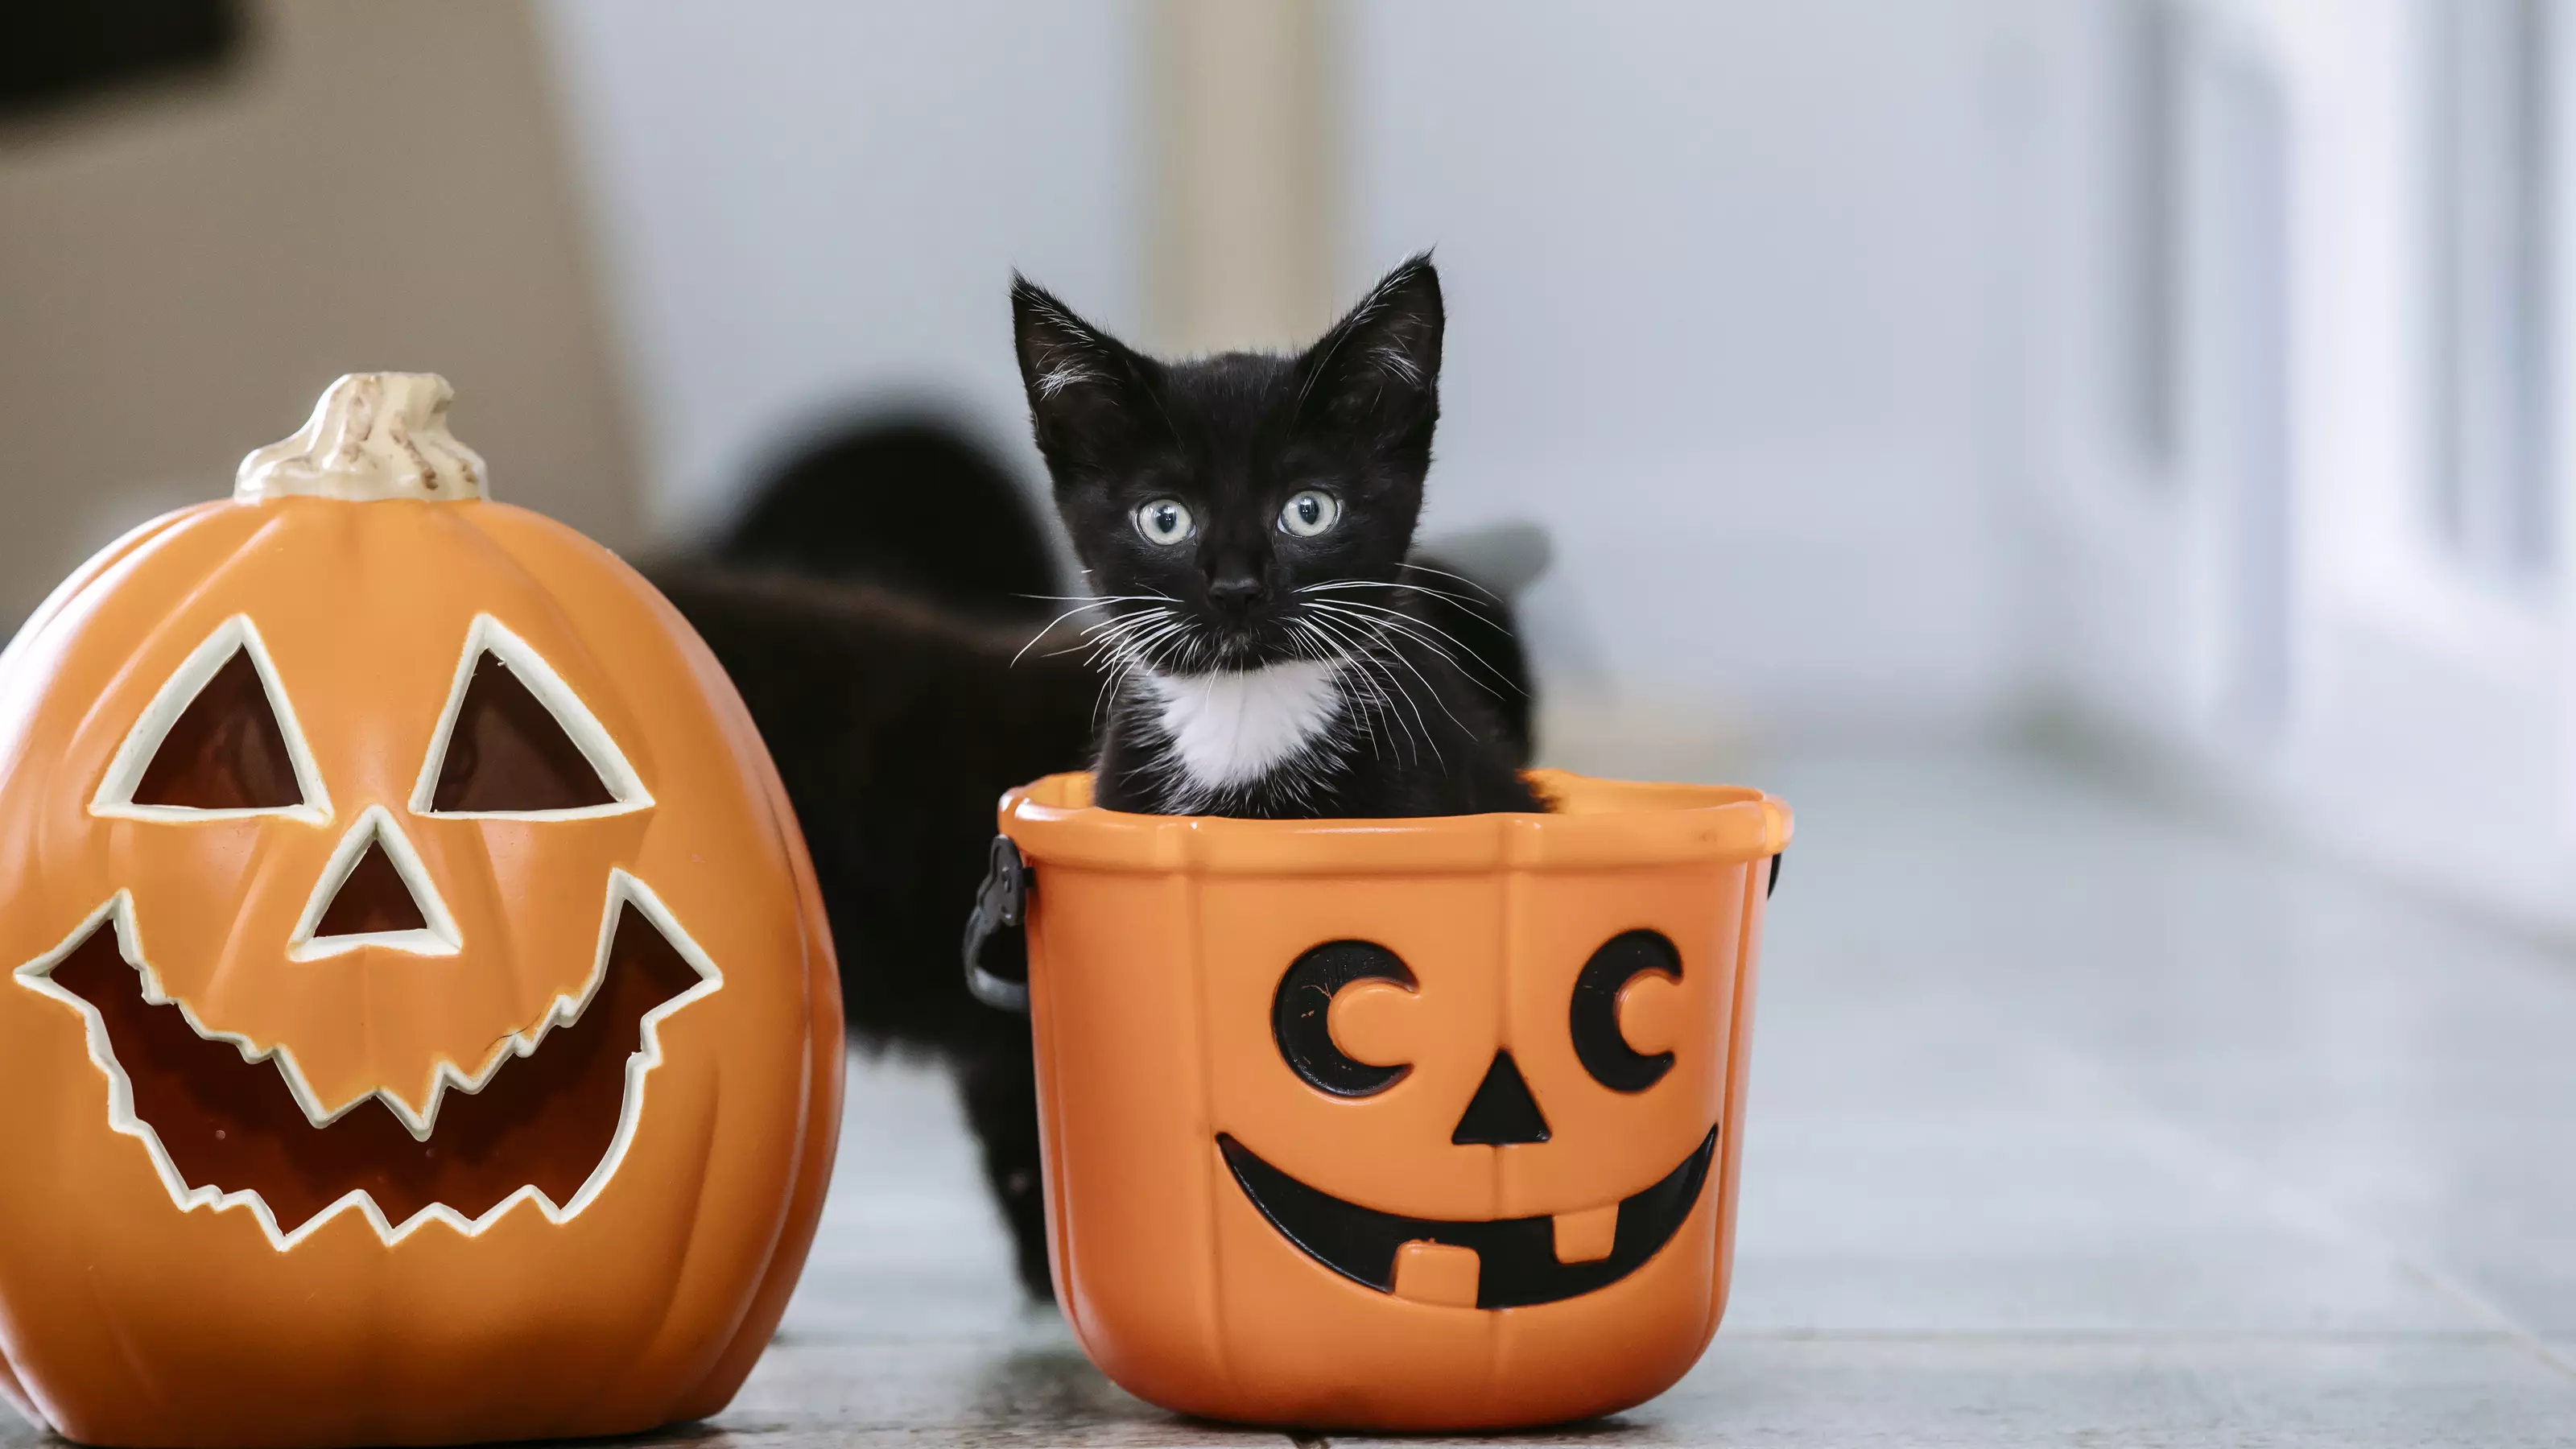 Kitten in a Halloween pumpkin